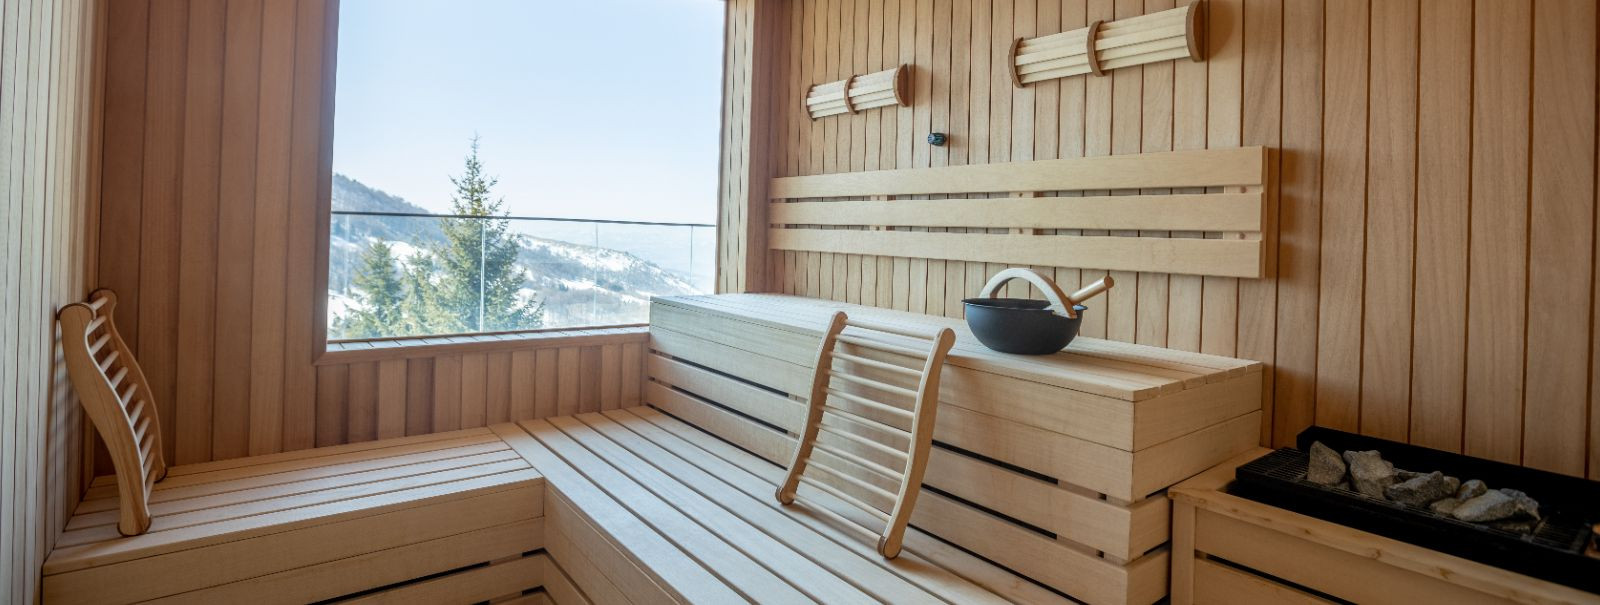 Õige puidu valimine oma sauna jaoks on oluline nii sauna sooritusvõime kui ka pikaealisuse jaoks. Teie poolt valitud puit mõjutab sauna soojapidavust, aroomi ja